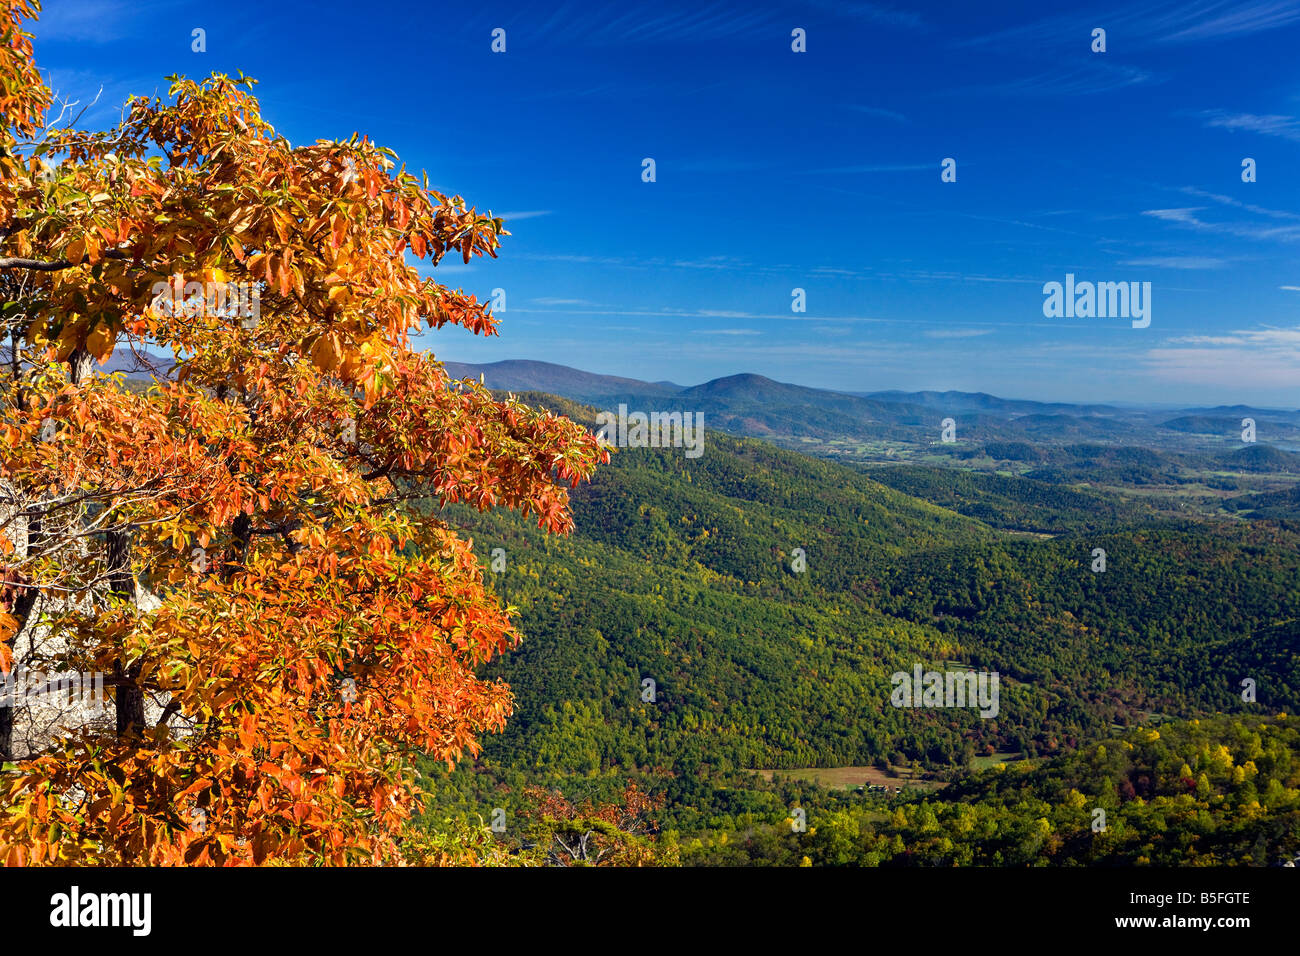 Vue sur la vallée de Shenandoah avec couleurs de l'automne contre le ciel bleu de l'ancienne montagne Rag, Shenandoah National Park, en Virginie. Banque D'Images